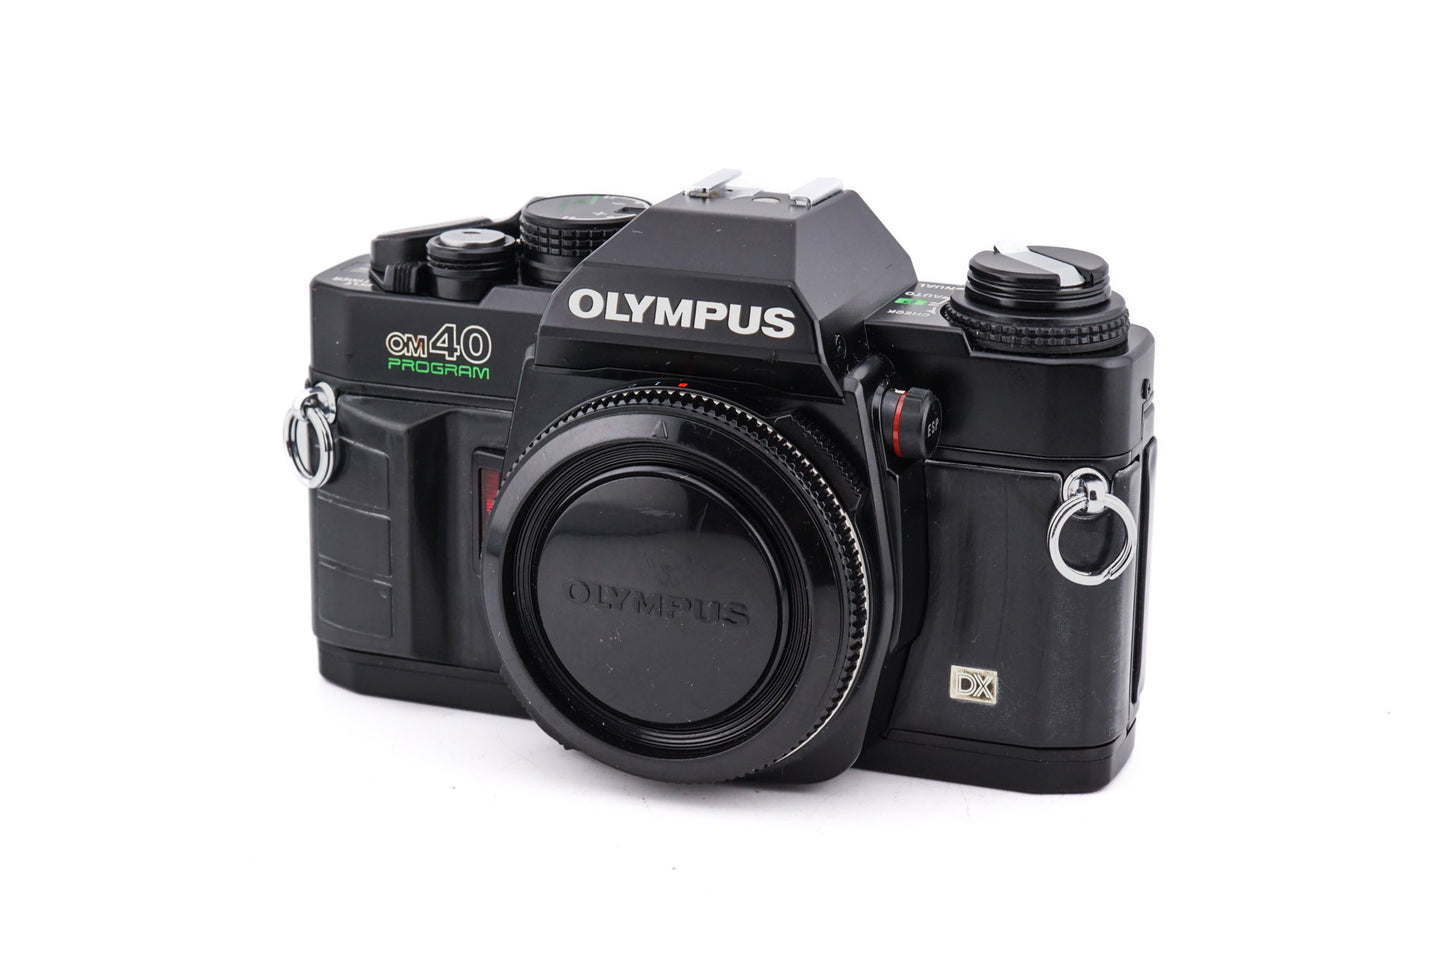 Olympus OM40 Program - Camera